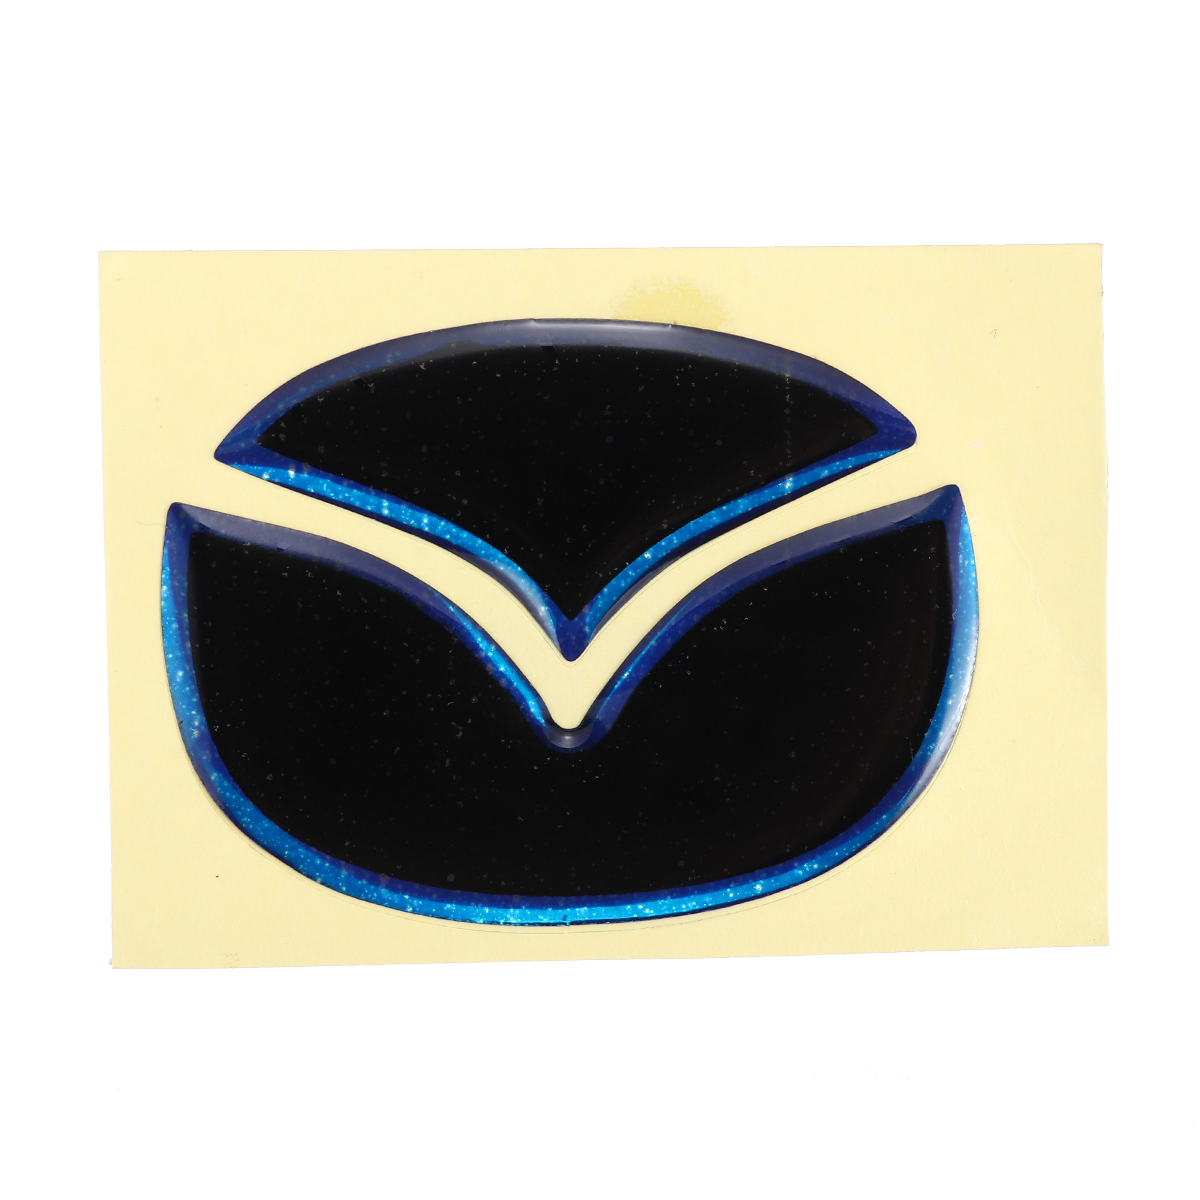 Car-Interior-Steering-Wheel-Sticker-Trim-Decal-Decorative-for-Mazda-CX-4-CX-5-1430202